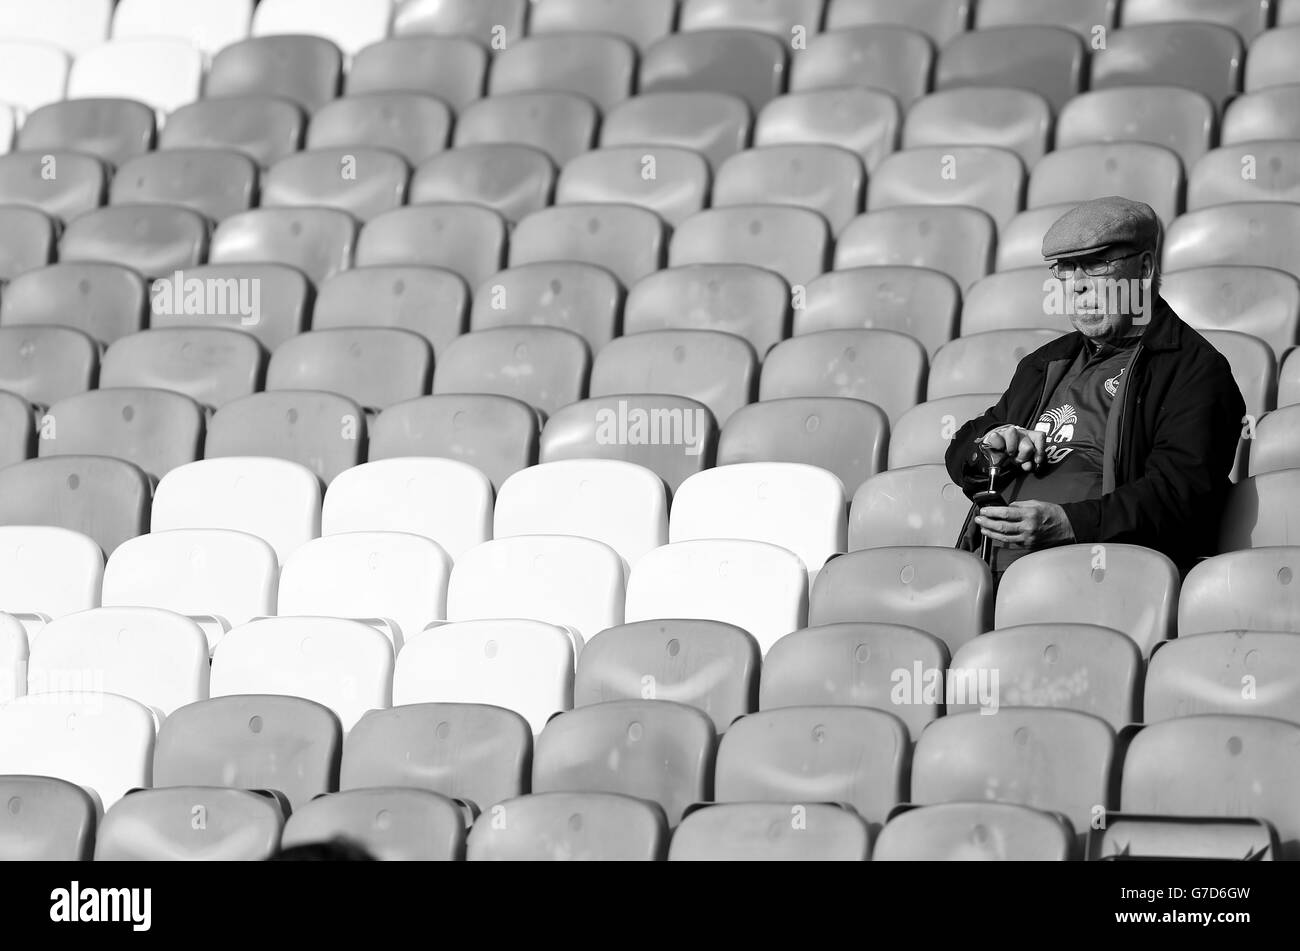 Un fan di Everton negli stand durante la partita della Barclays Premier League a Goodison Park, Liverpool. PREMERE ASSOCIAZIONE foto. Data immagine: Sabato 18 ottobre 2014. Vedi PA storia CALCIO Everton. Il credito fotografico dovrebbe essere Peter Byrne/PA Wire. . . Foto Stock